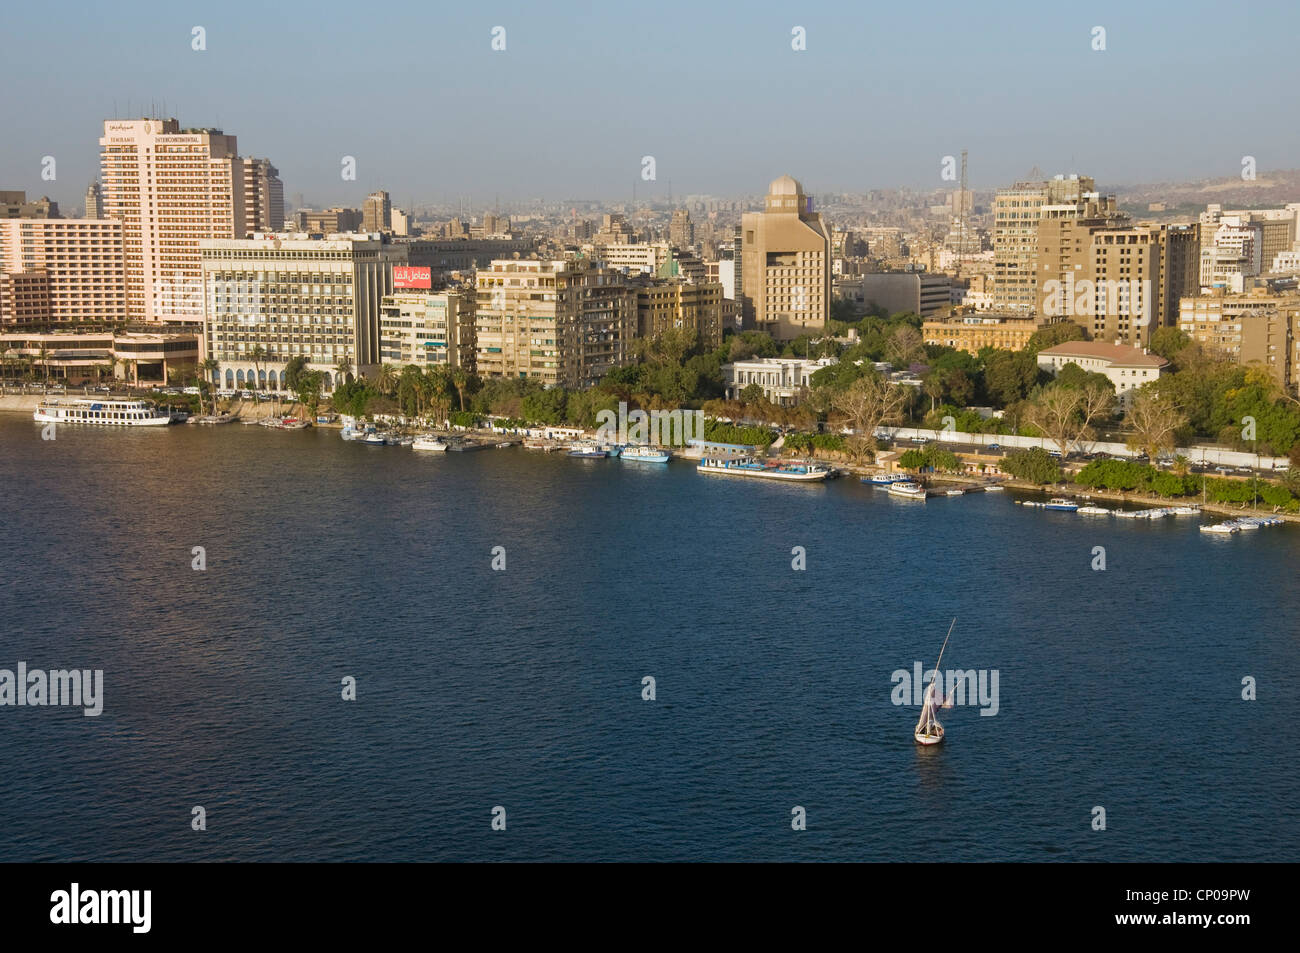 Vue sur le centre-ville de Le Caire et le nil de Zamalek - Égypte Banque D'Images